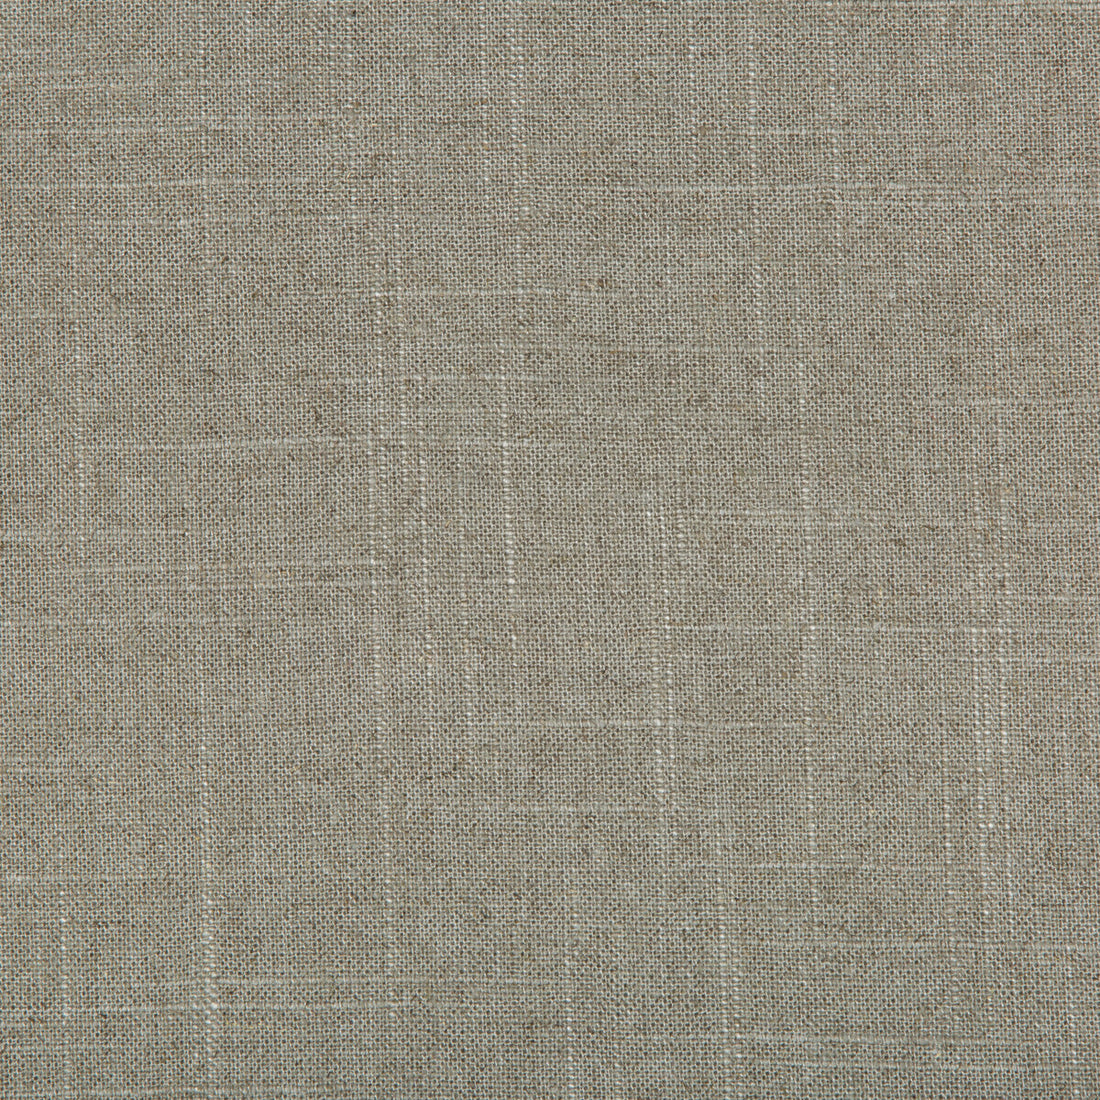 Kravet Basics fabric in 30808-1121 color - pattern 30808.1121.0 - by Kravet Basics